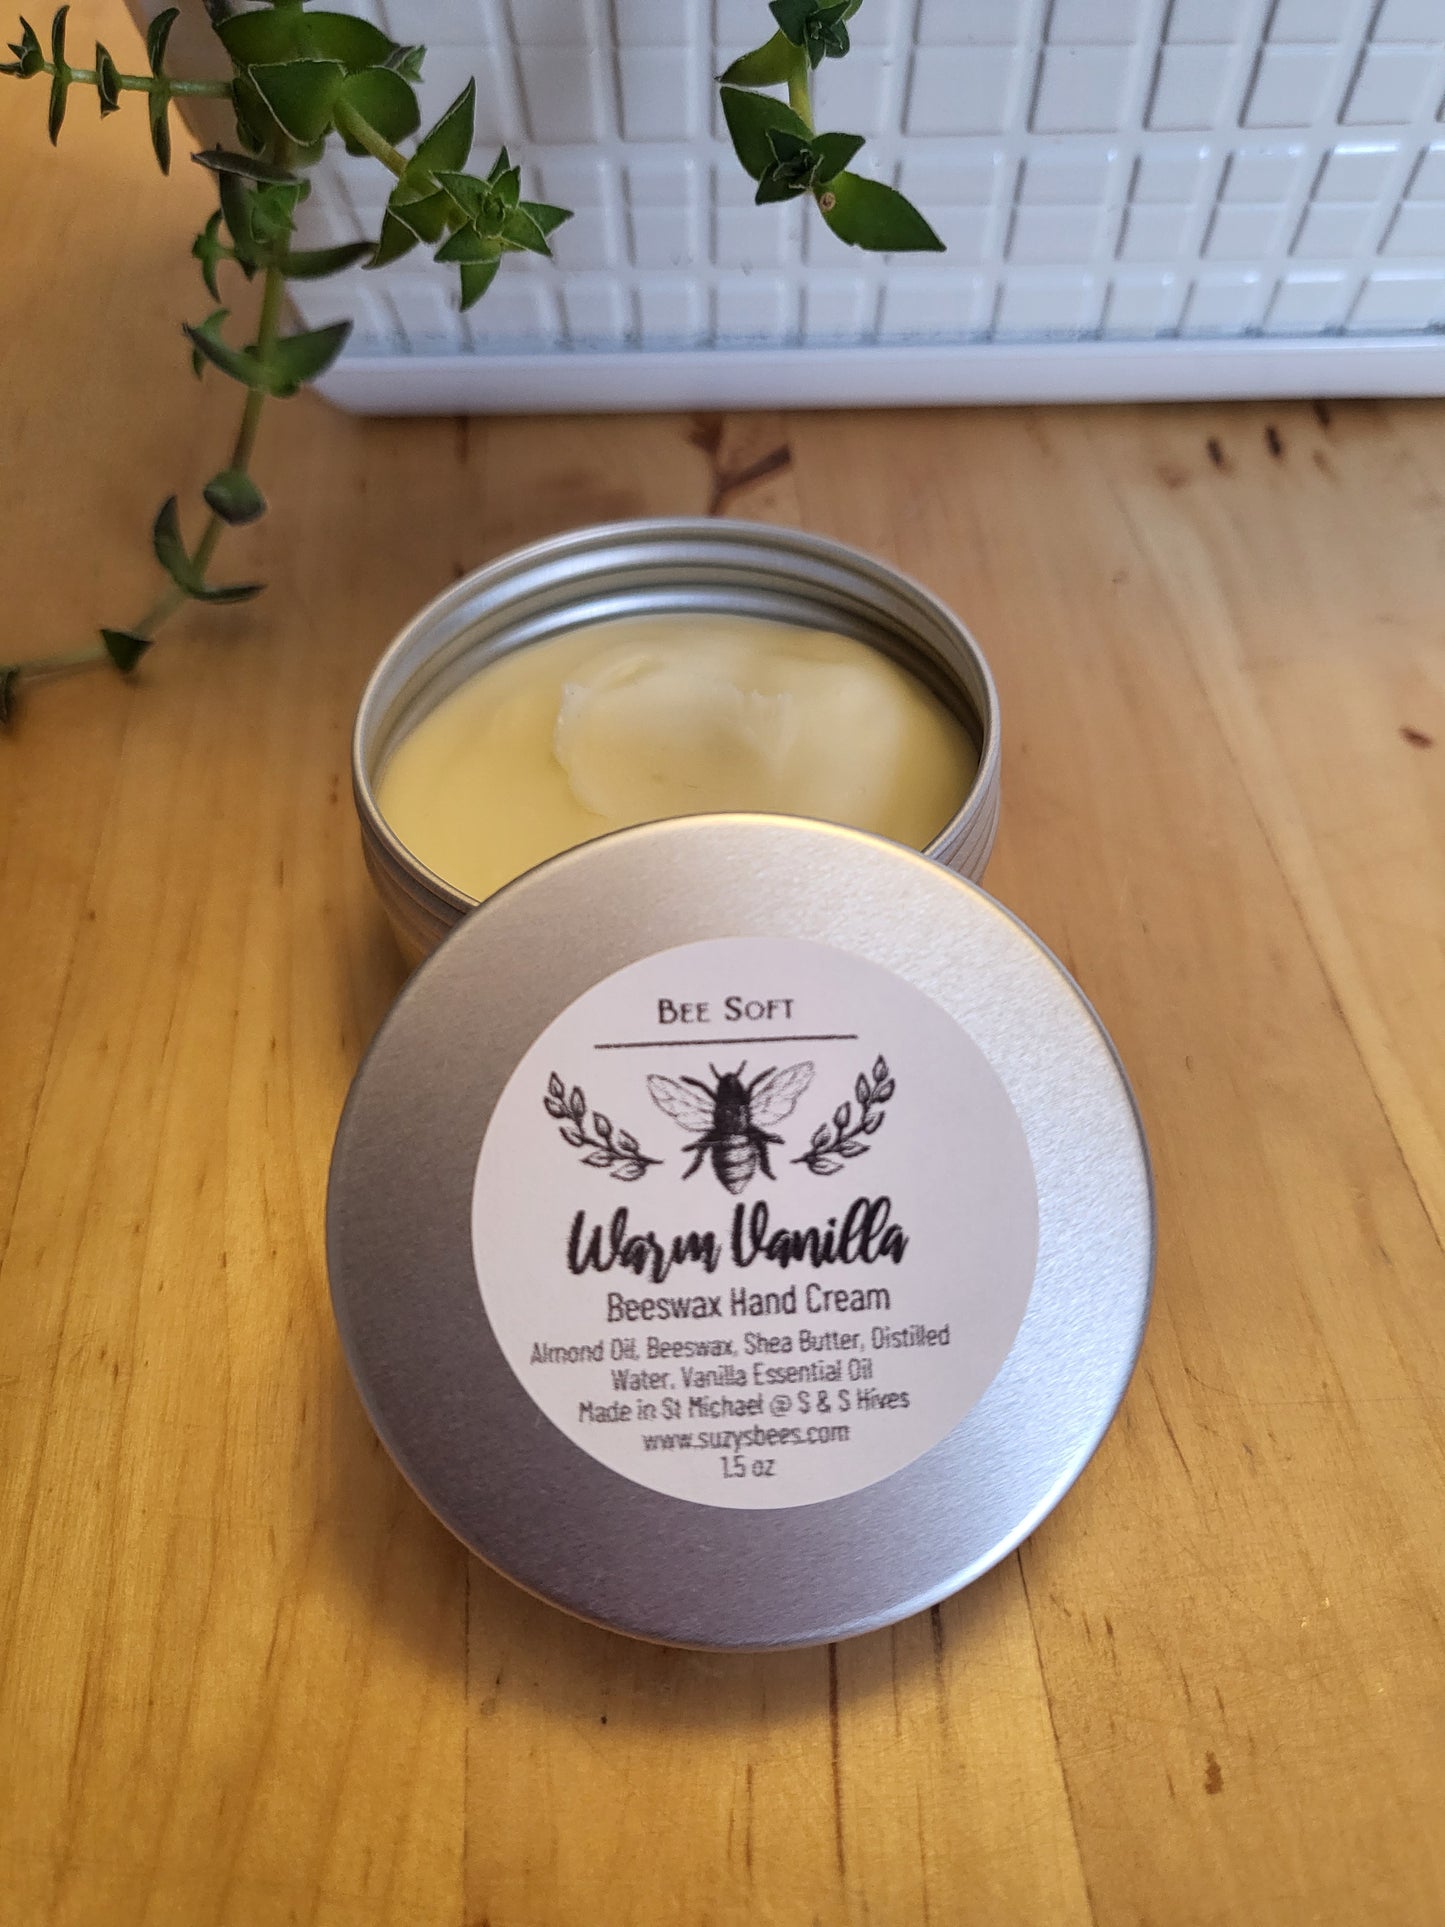 Beeswax Hand Cream in Warm Vanilla